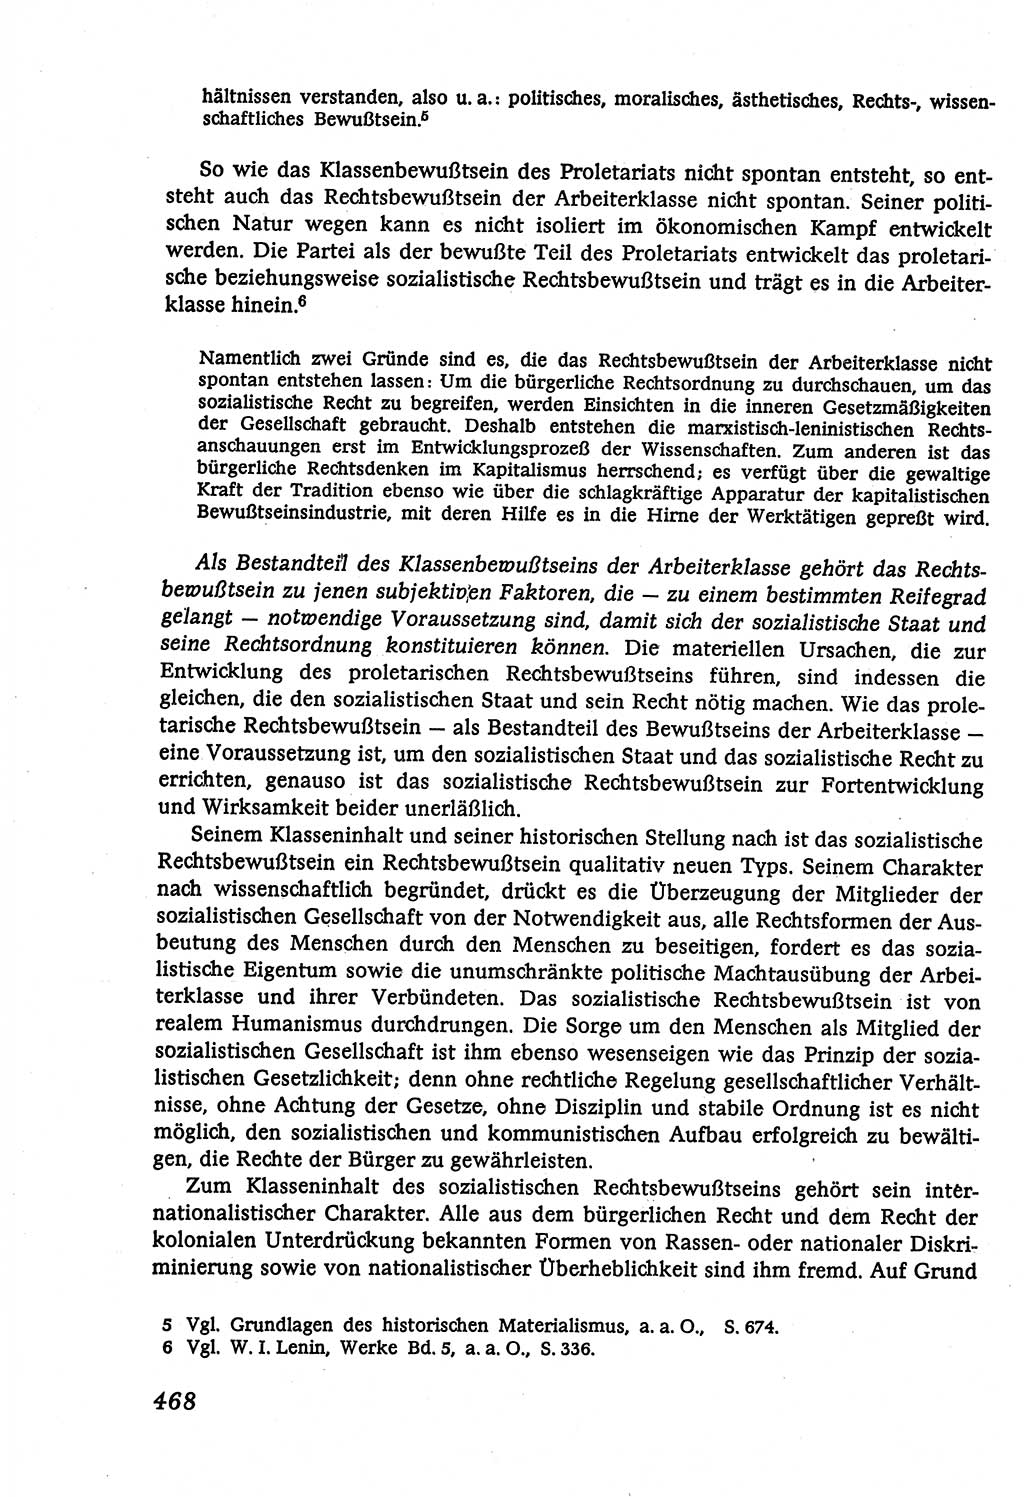 Marxistisch-leninistische (ML) Staats- und Rechtstheorie [Deutsche Demokratische Republik (DDR)], Lehrbuch 1980, Seite 468 (ML St.-R.-Th. DDR Lb. 1980, S. 468)